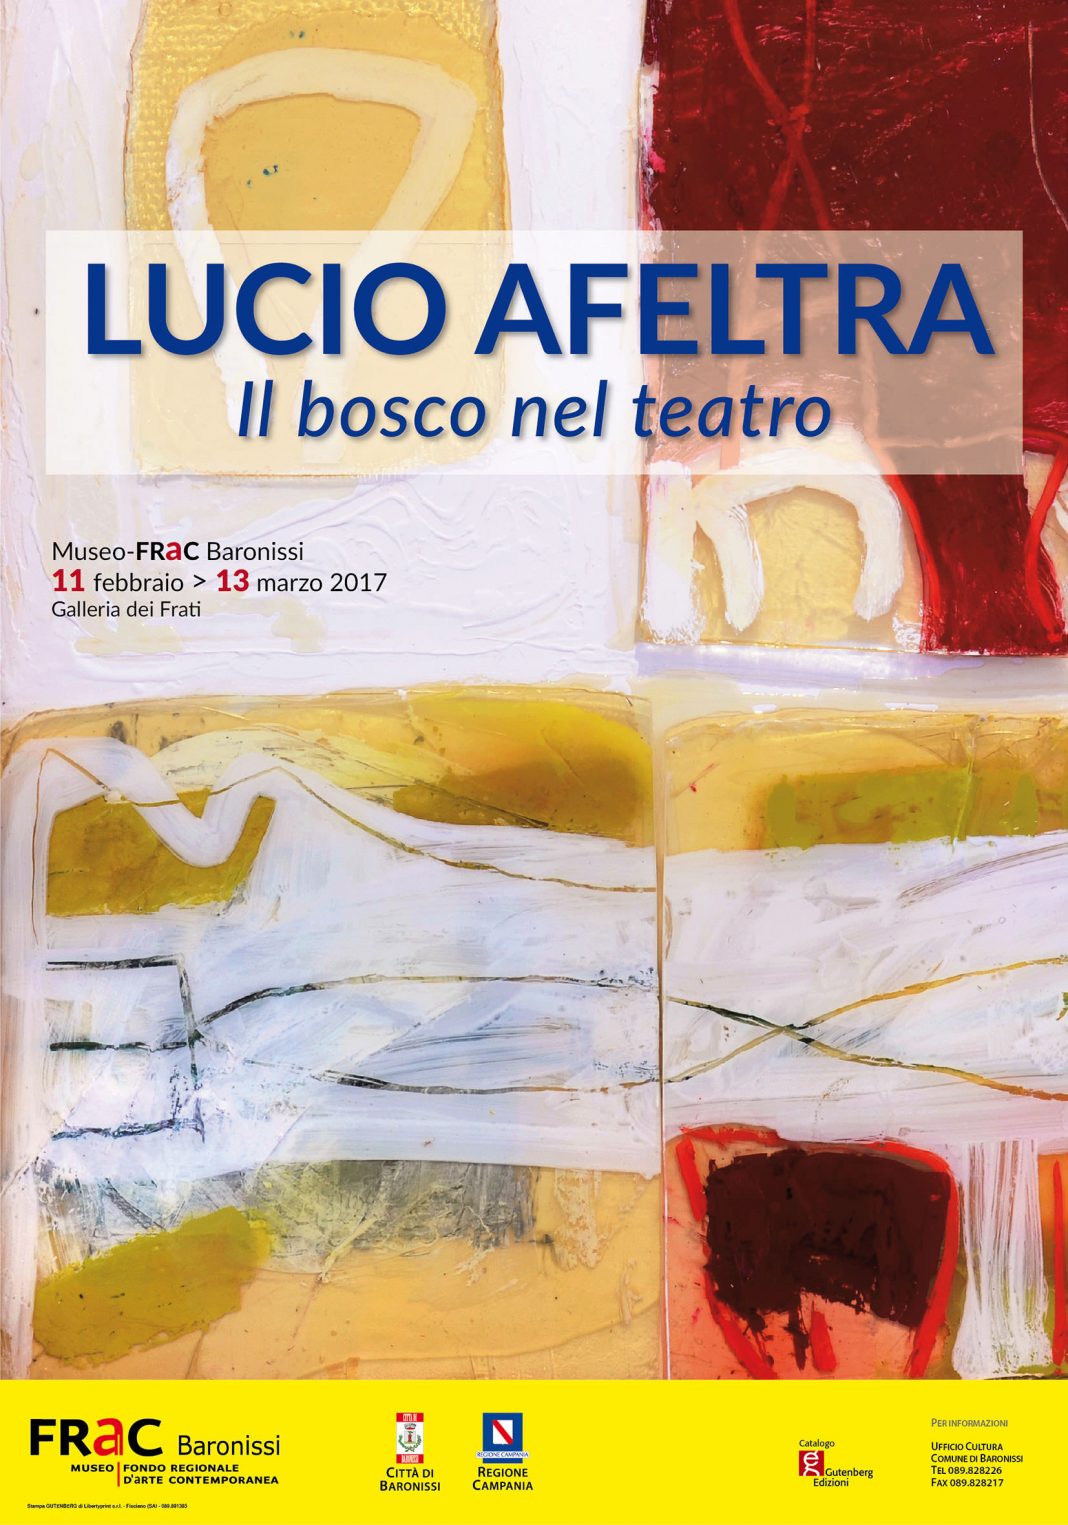 Lucio Afeltra – Il bosco nel teatrohttps://www.exibart.com/repository/media/eventi/2017/02/lucio-afeltra-8211-il-bosco-nel-teatro-1068x1525.jpg